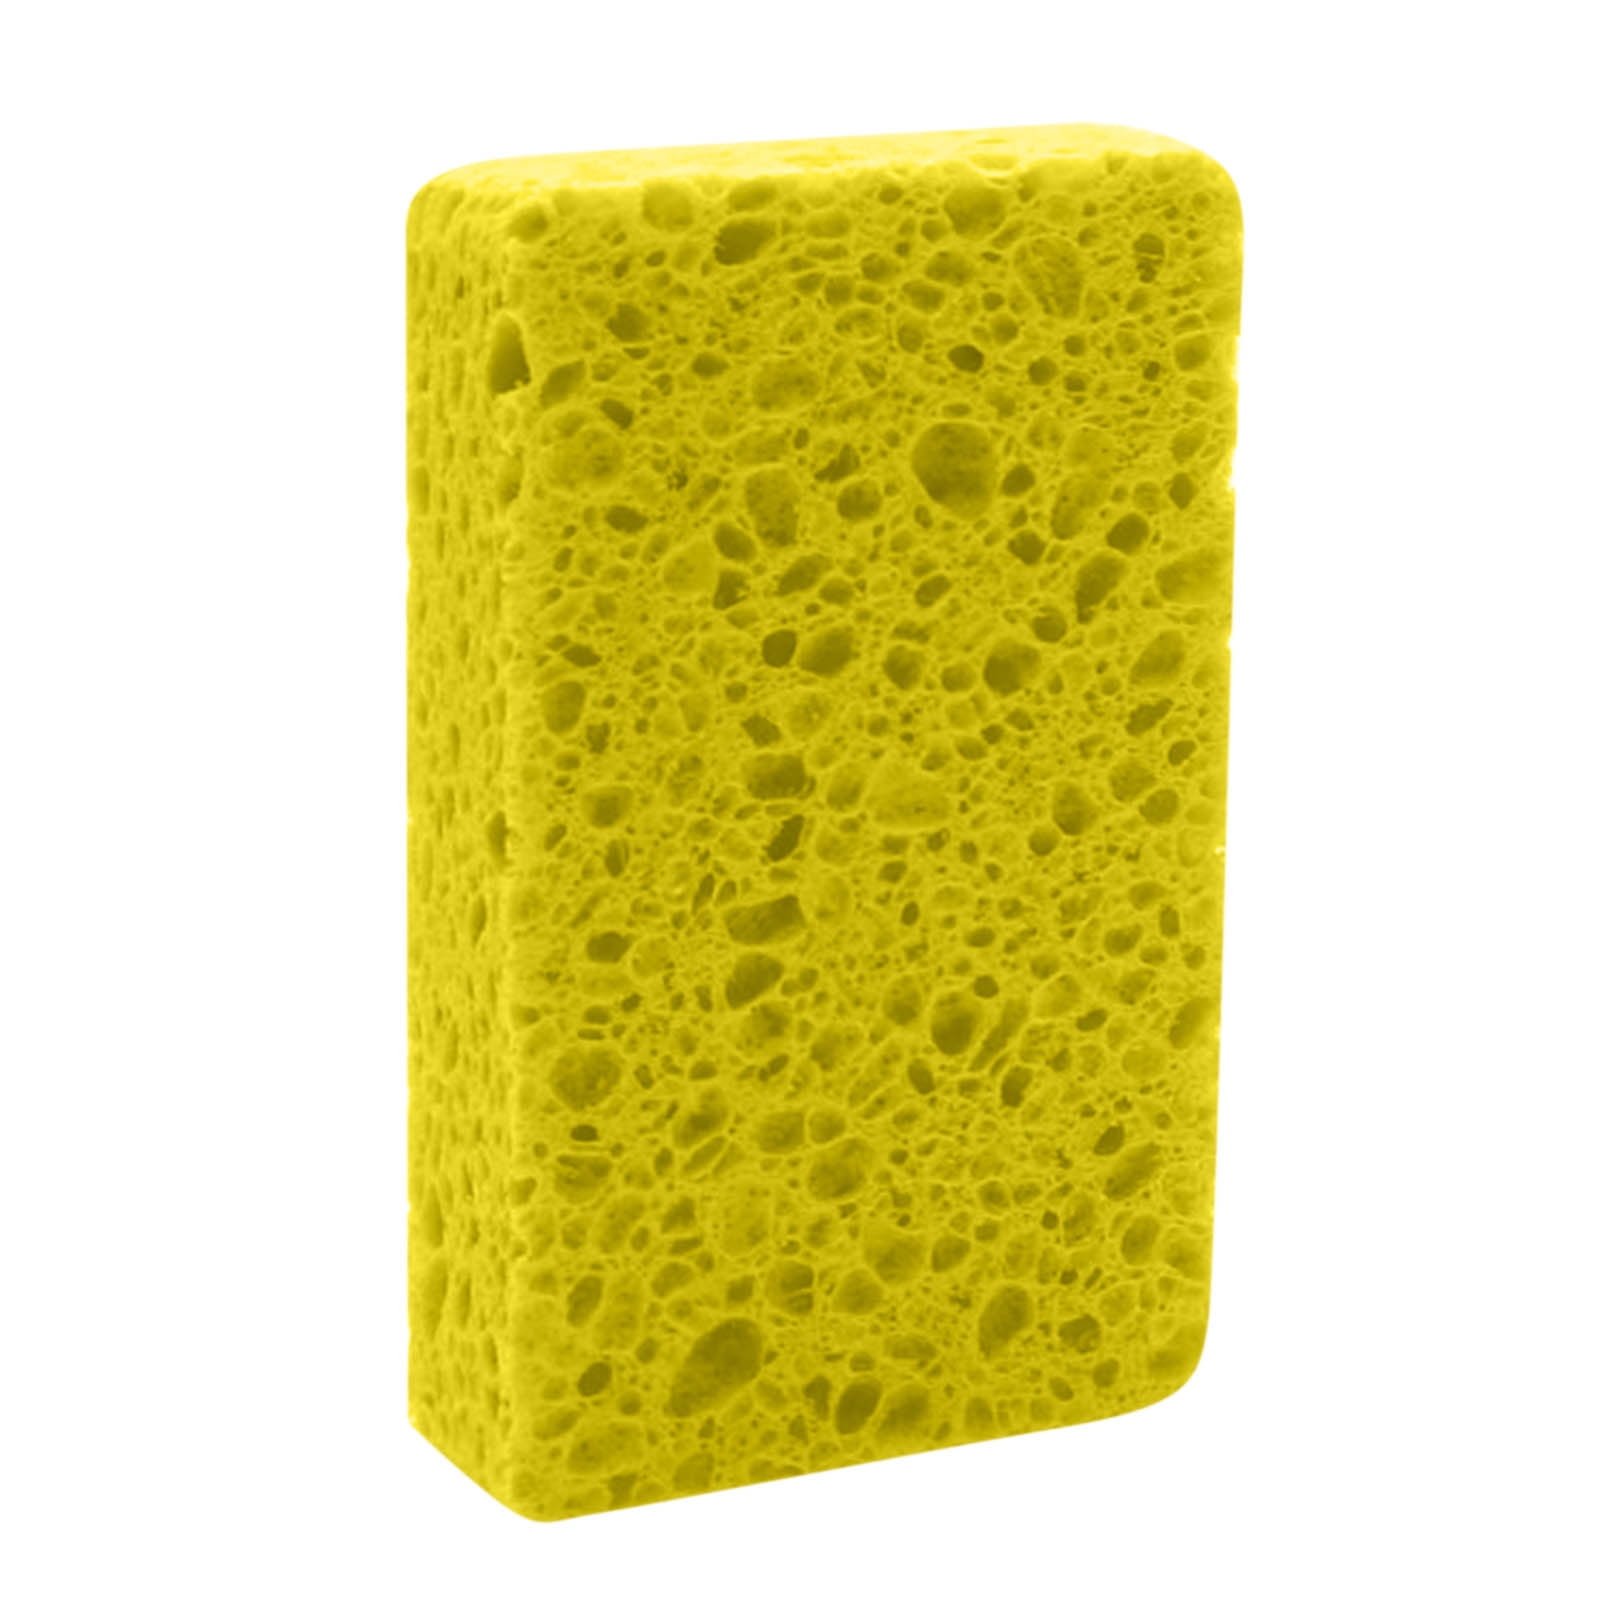 Dishwashing Sponge, Scouring Pad, Dishwashing Rag, Non-stick Oil Wood Pulp  Sponge Block, Absorbent Magic Wipe